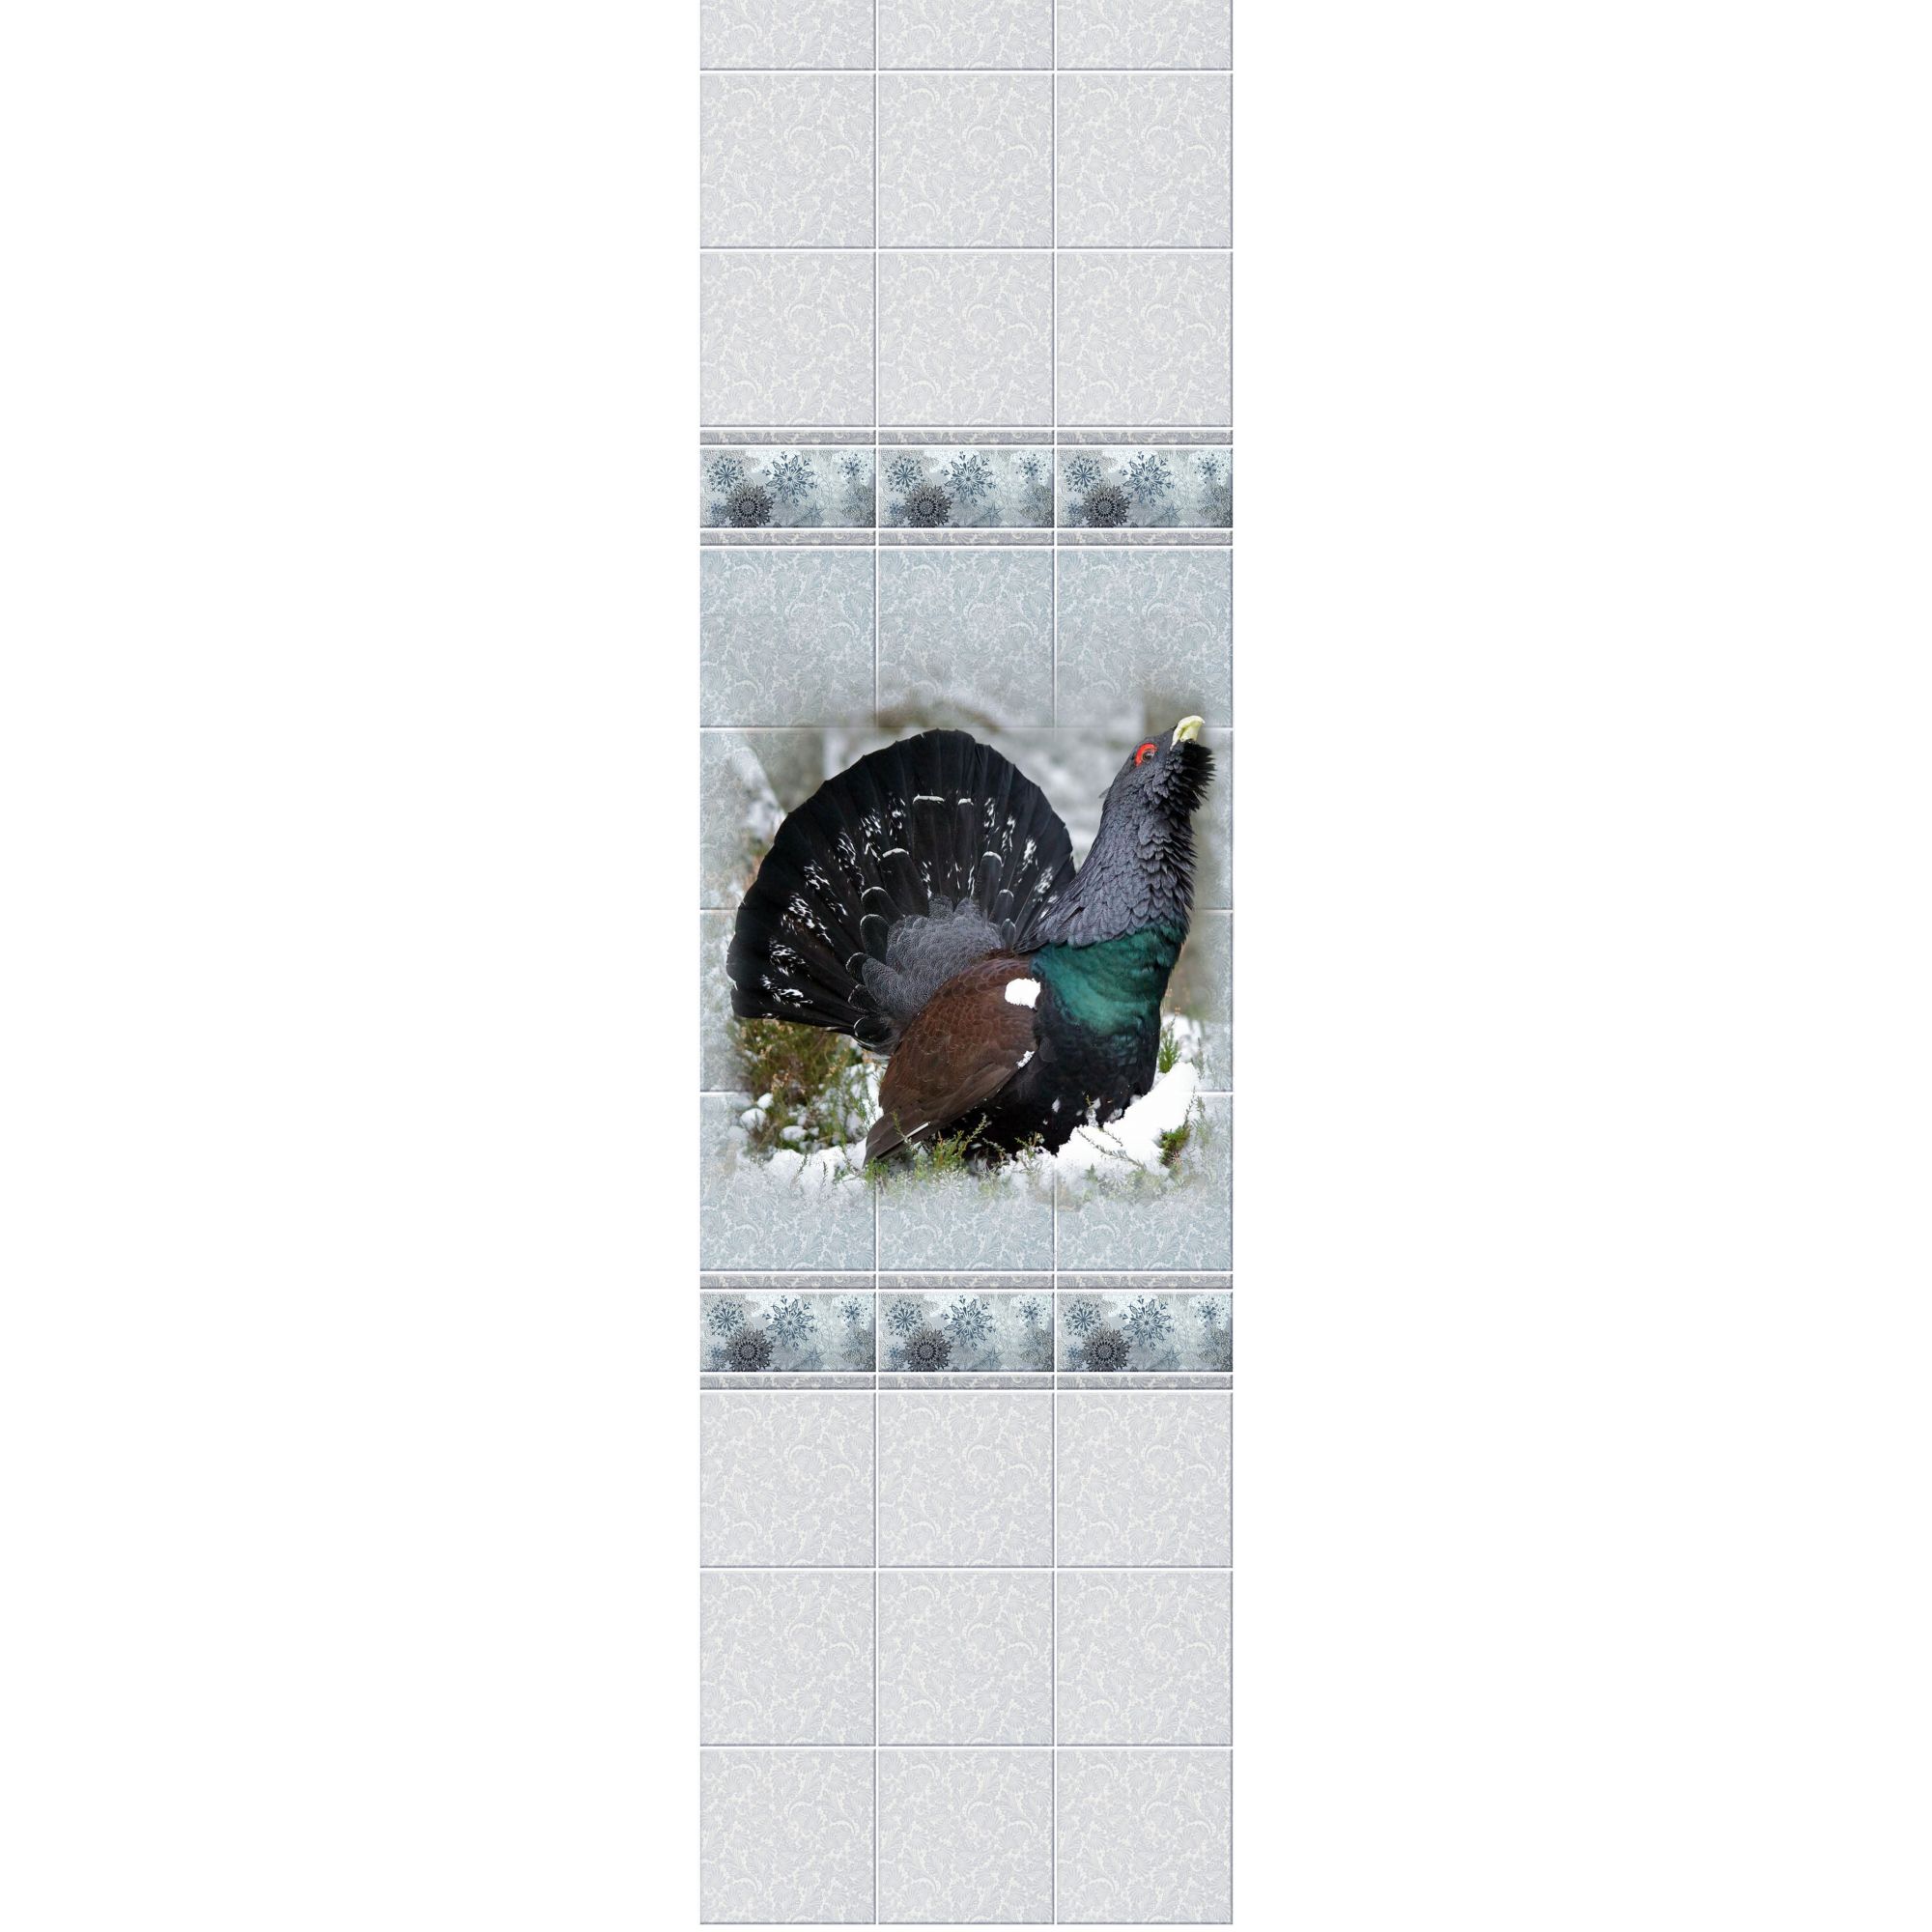 Стеновая панель ПВХ Novita с эффектом мерцания 3D Зимняя сказка.Глухарь 2700х250 мм